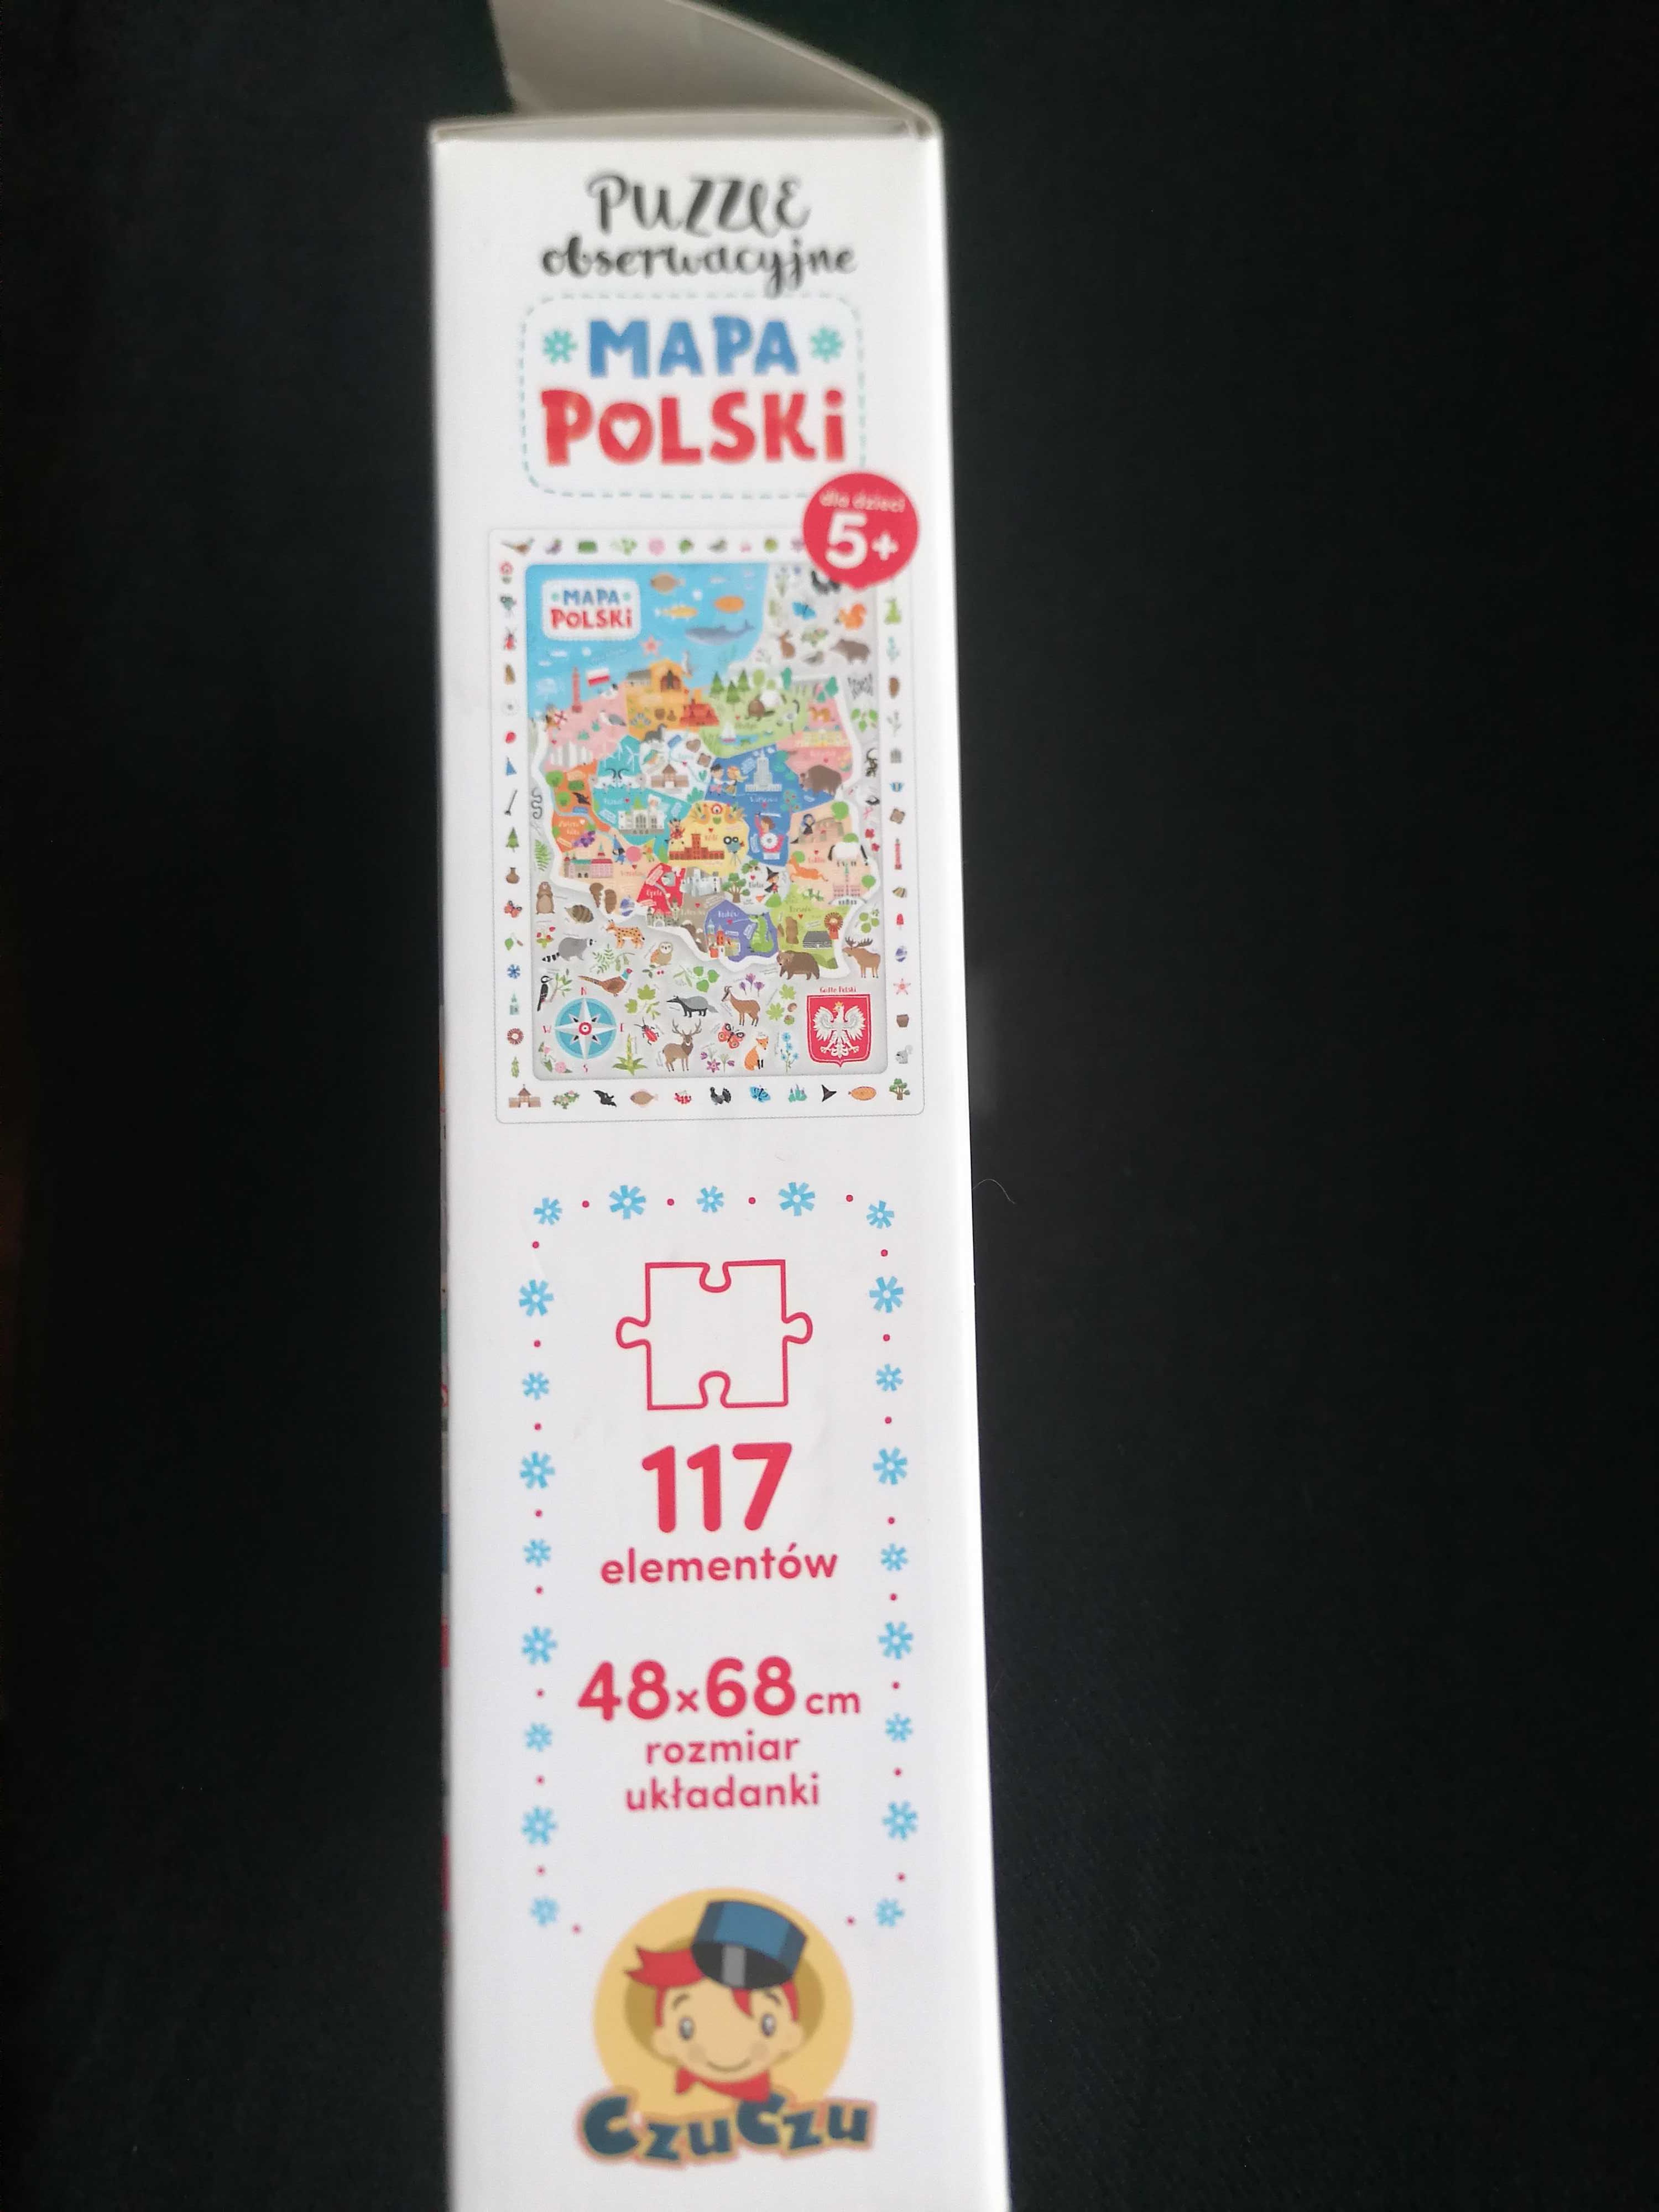 Puzzle Obserwacyjne Mapa Polski 117elementów. 5+ CzuCzu